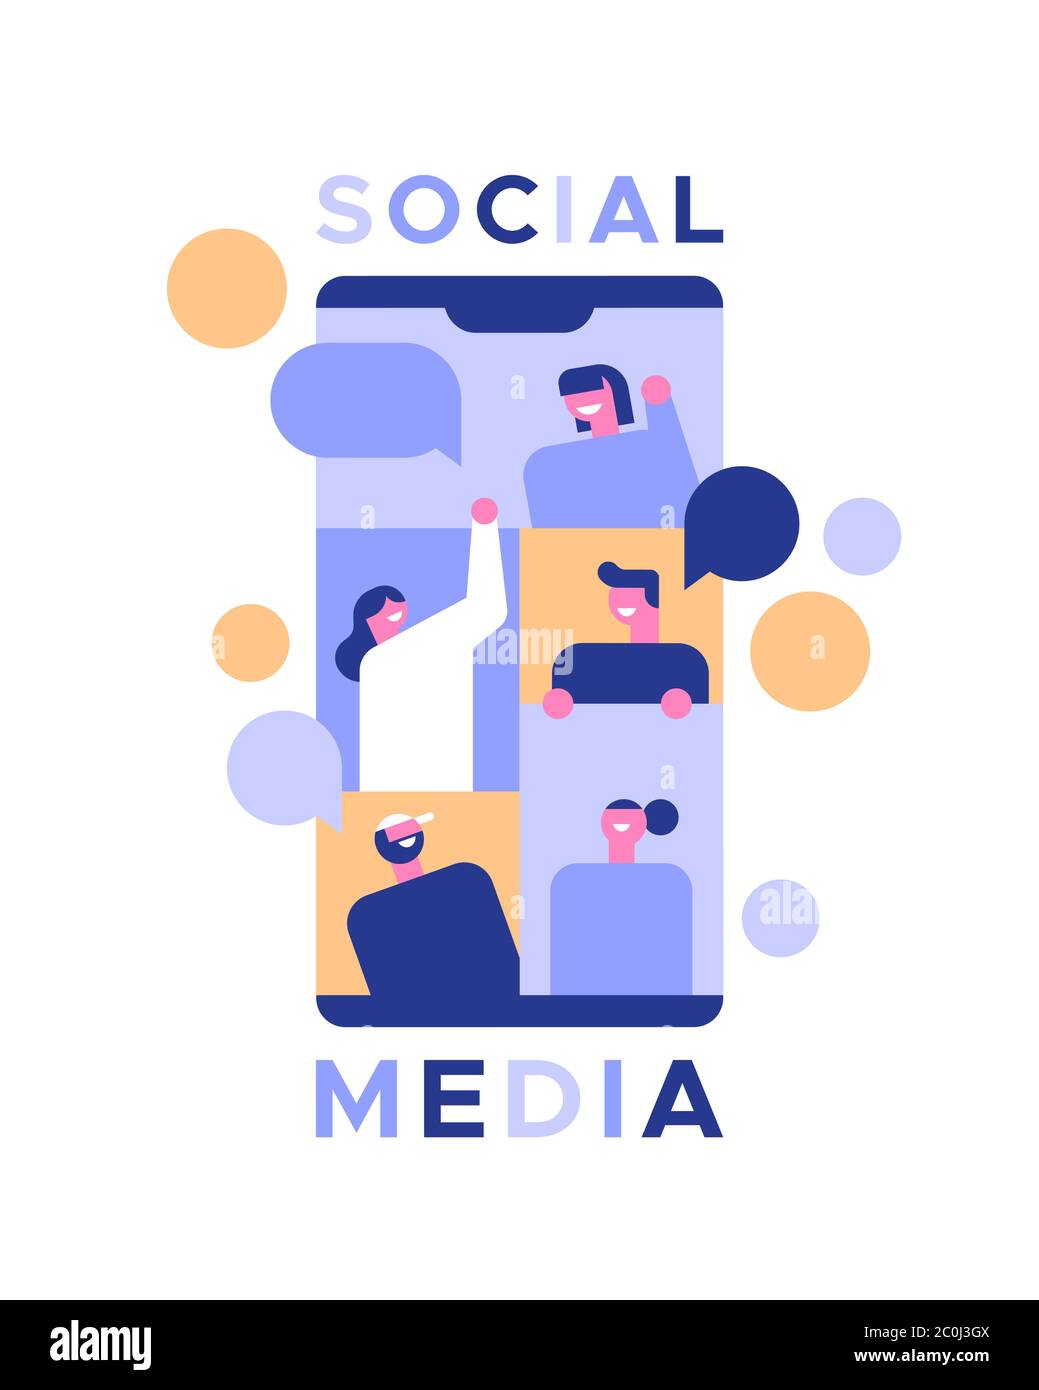 Social Media Illustration von Menschen gruppieren sich in Smartphone-App oder Freundschaft Kommunikationskonzept. Moderne flache Cartoon-Design auf isolierten Rücken Stock Vektor